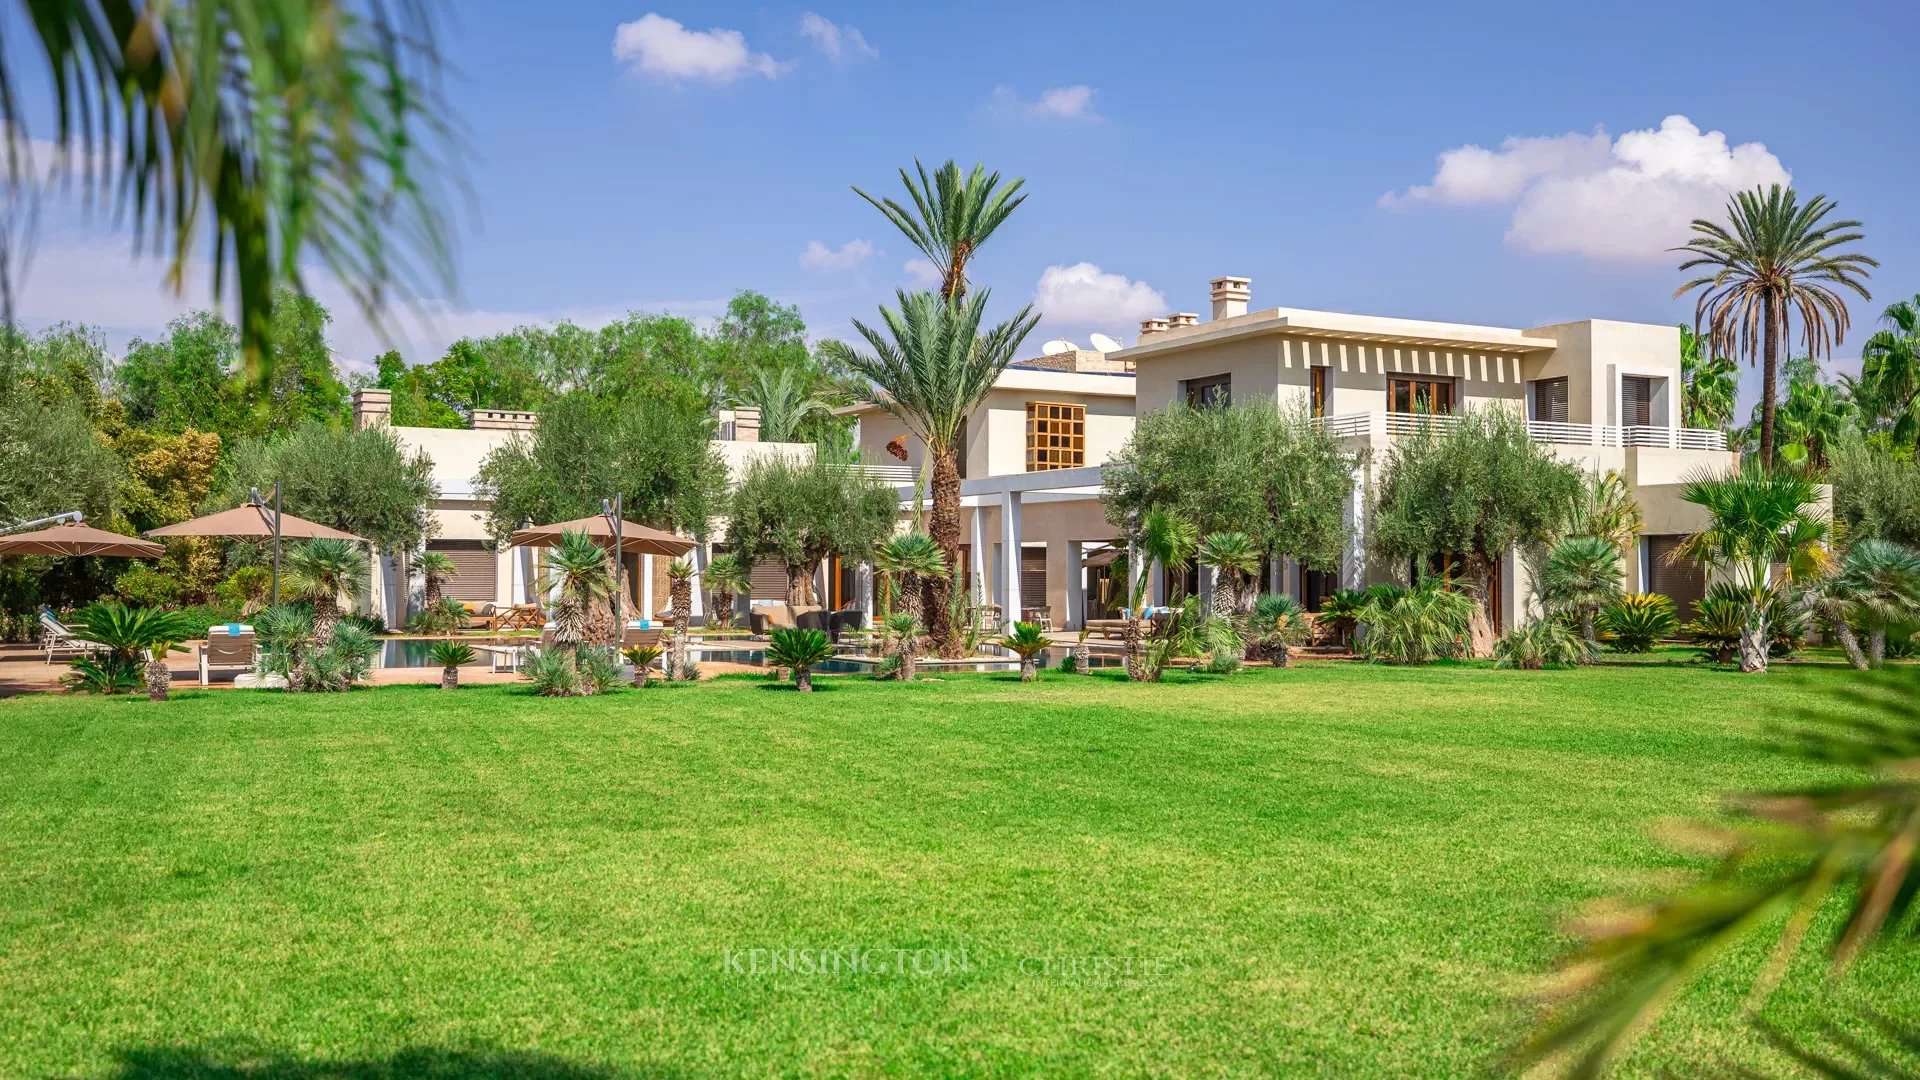 Villa Persyen in Marrakech, Morocco